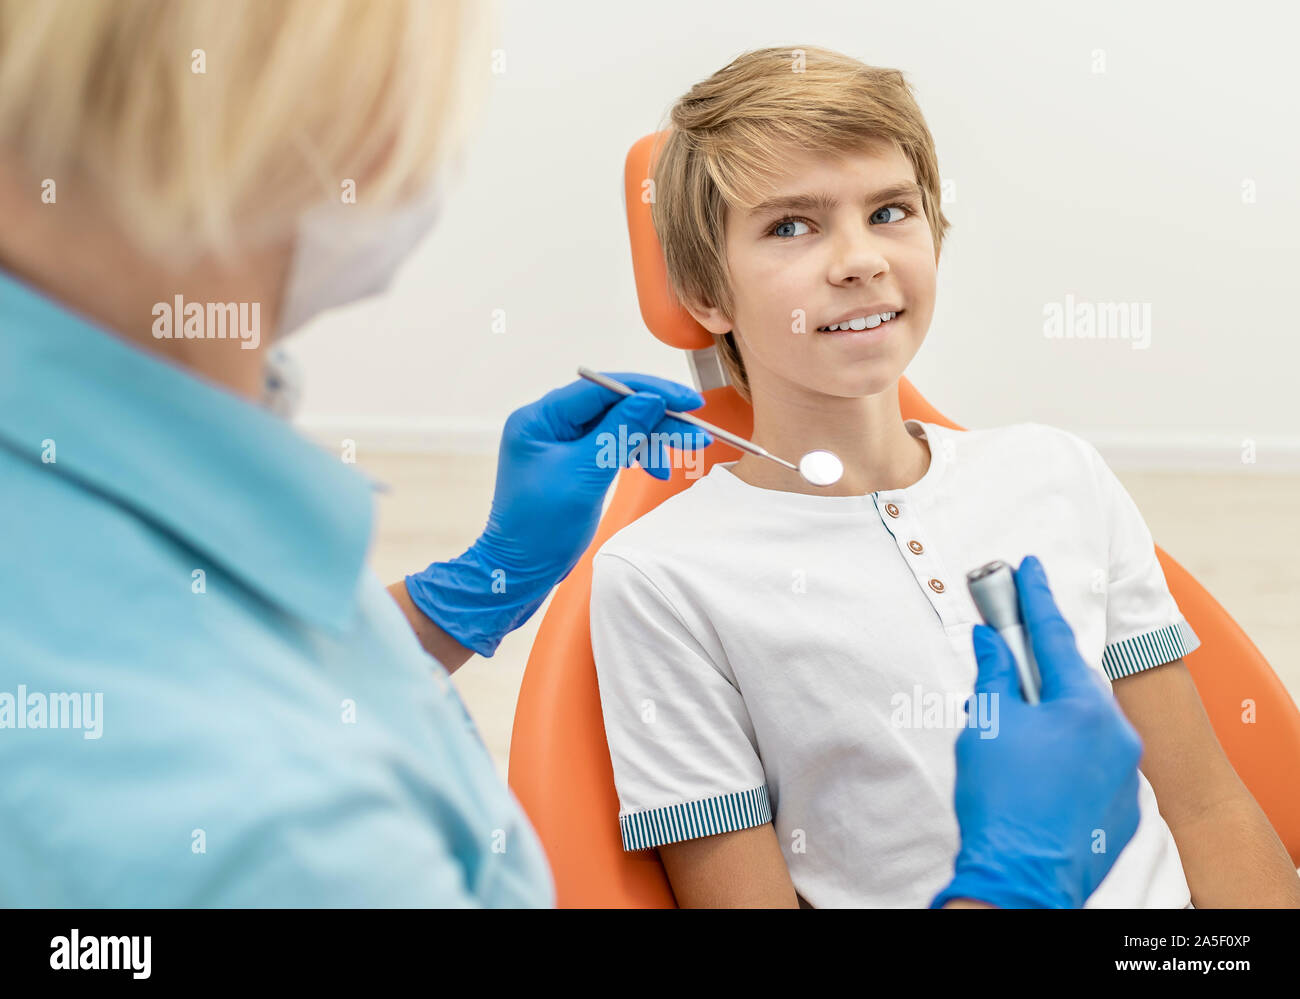 Examen dentaire du garçon blond est sur le point de commencer dans une clinique Banque D'Images